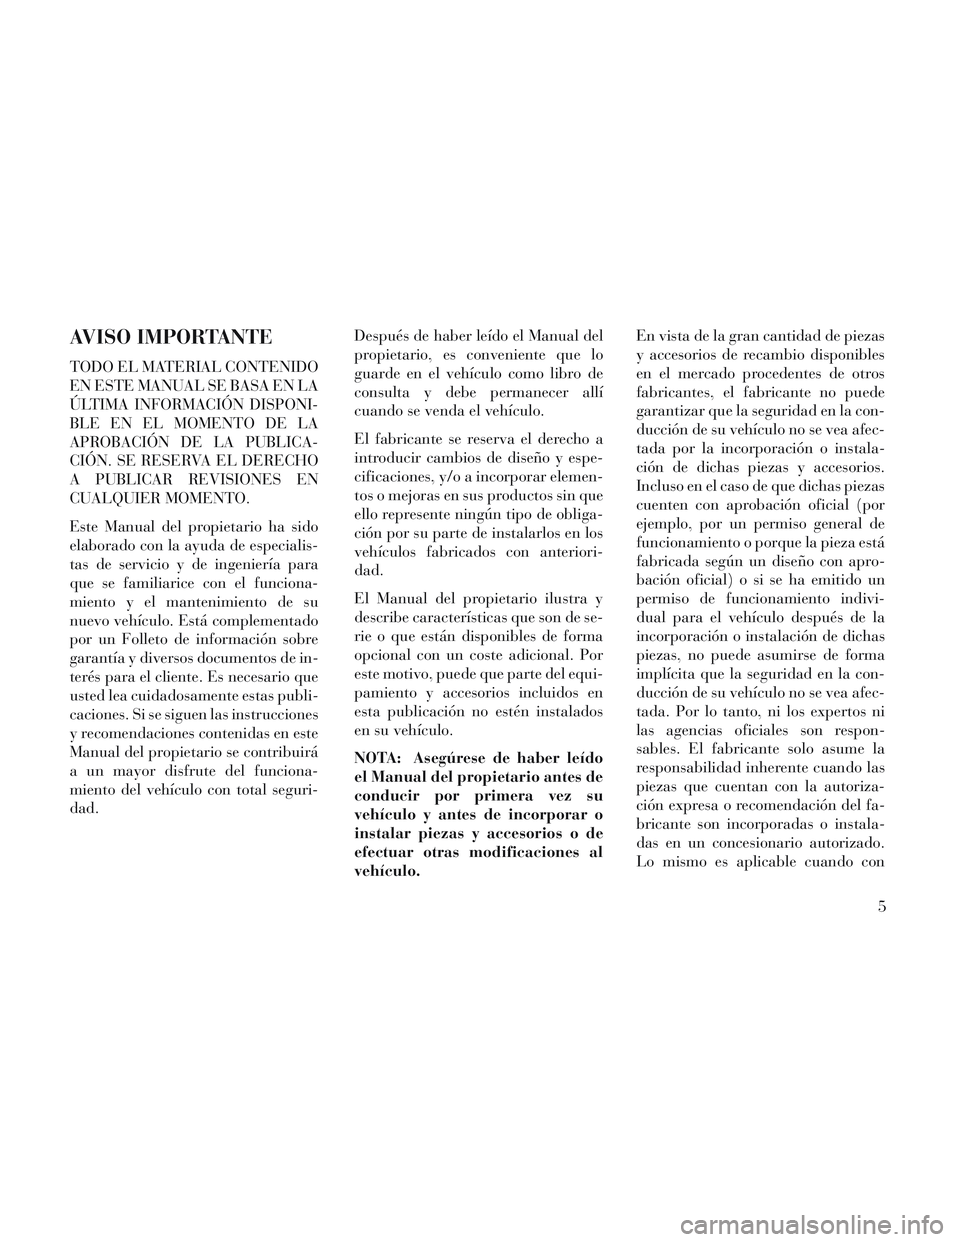 Lancia Voyager 2014  Manual de Empleo y Cuidado (in Spanish) AVISO IMPORTANTE
TODO EL MATERIAL CONTENIDO
EN ESTE MANUAL SE BASA EN LA
ÚLTIMA INFORMACIÓN DISPONI-
BLE EN EL MOMENTO DE LA
APROBACIÓN DE LA PUBLICA-
CIÓN. SE RESERVA EL DERECHO
A PUBLICAR REVISI